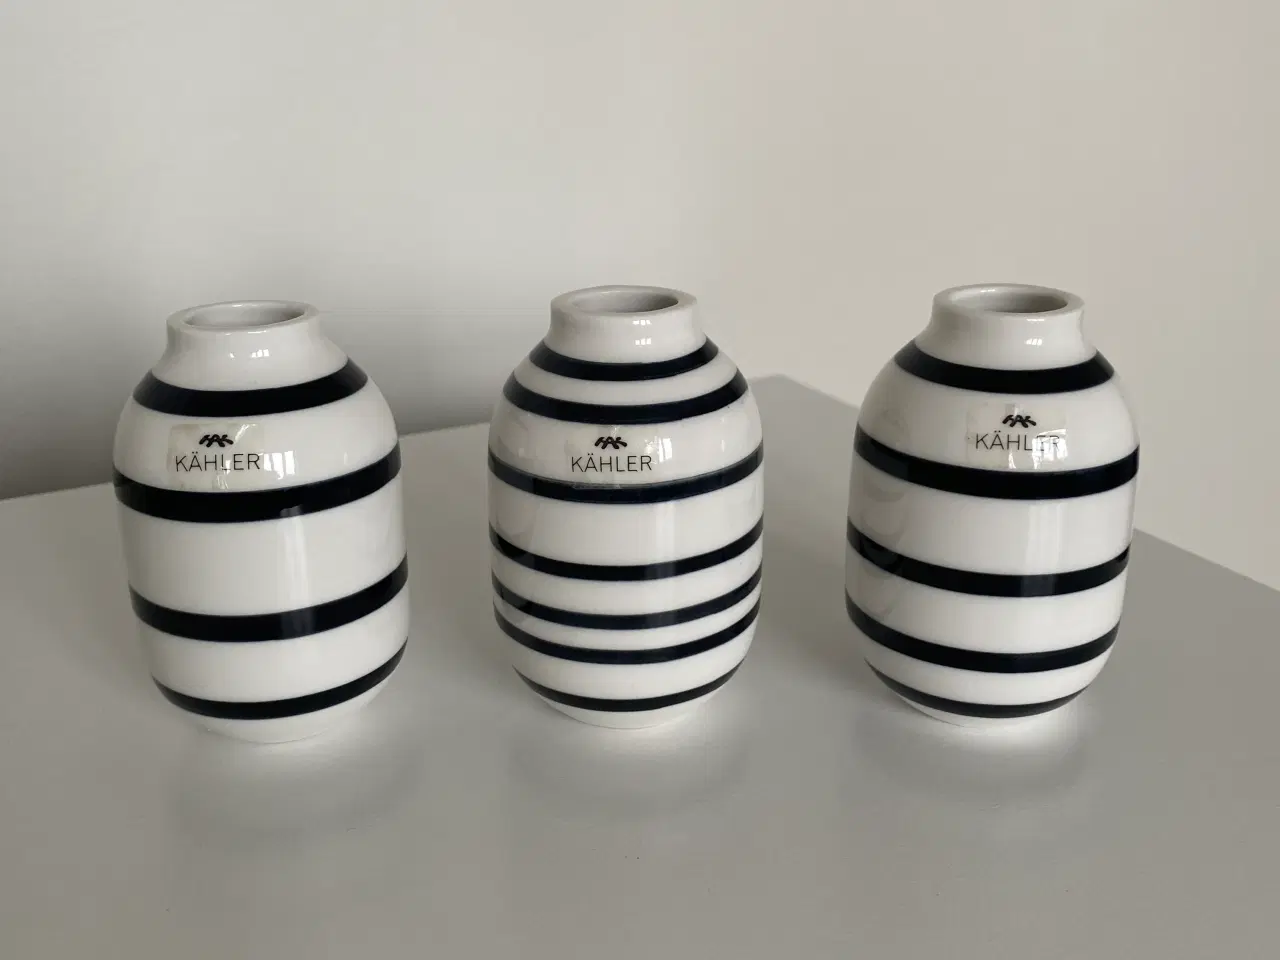 Billede 1 - 3 stk Kâhler vaser. Hvide med sorte striber.